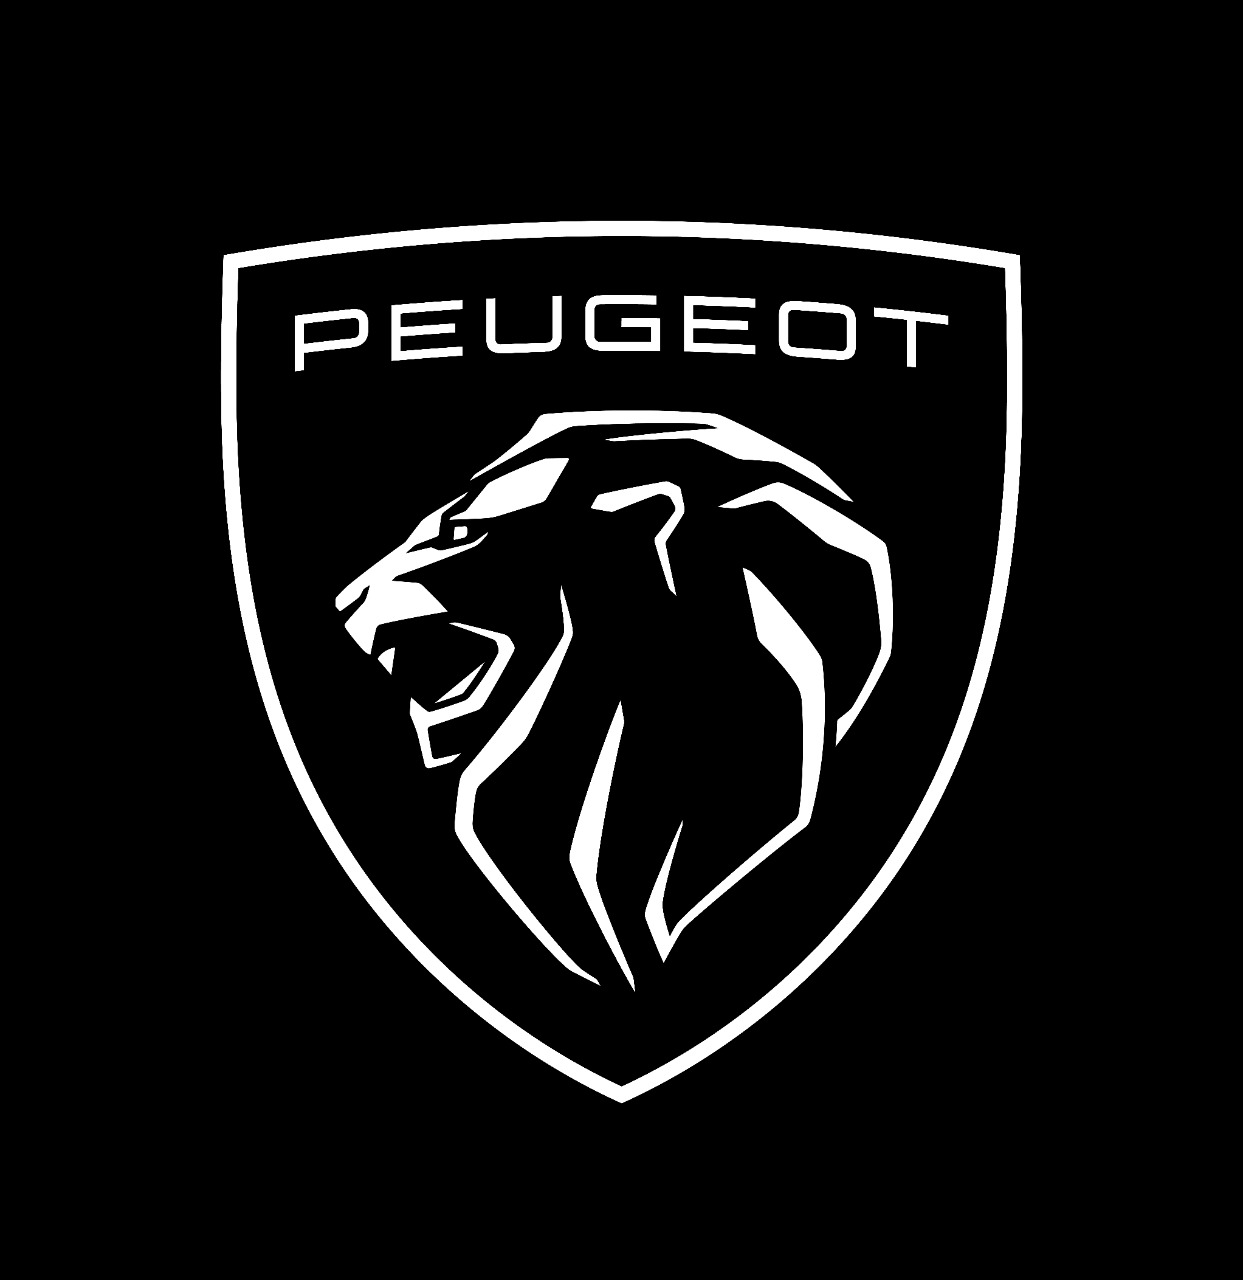 Peugeot nueva identidad black